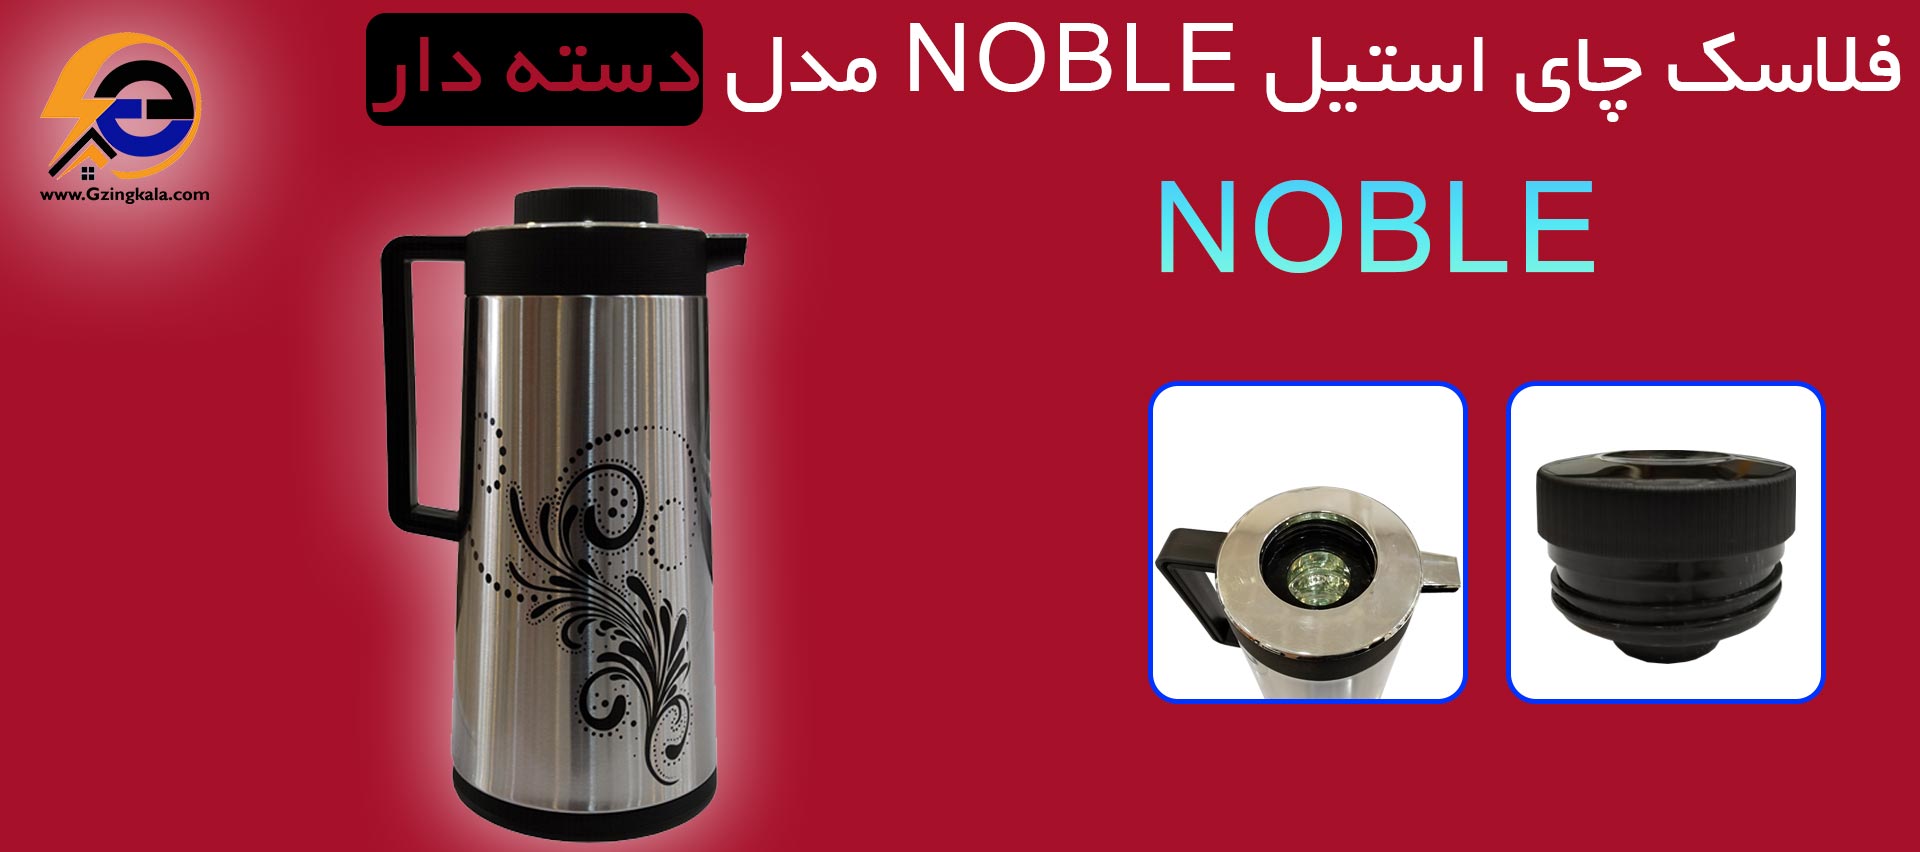 فلاسک چای استیل NOBLE مدل دسته دار